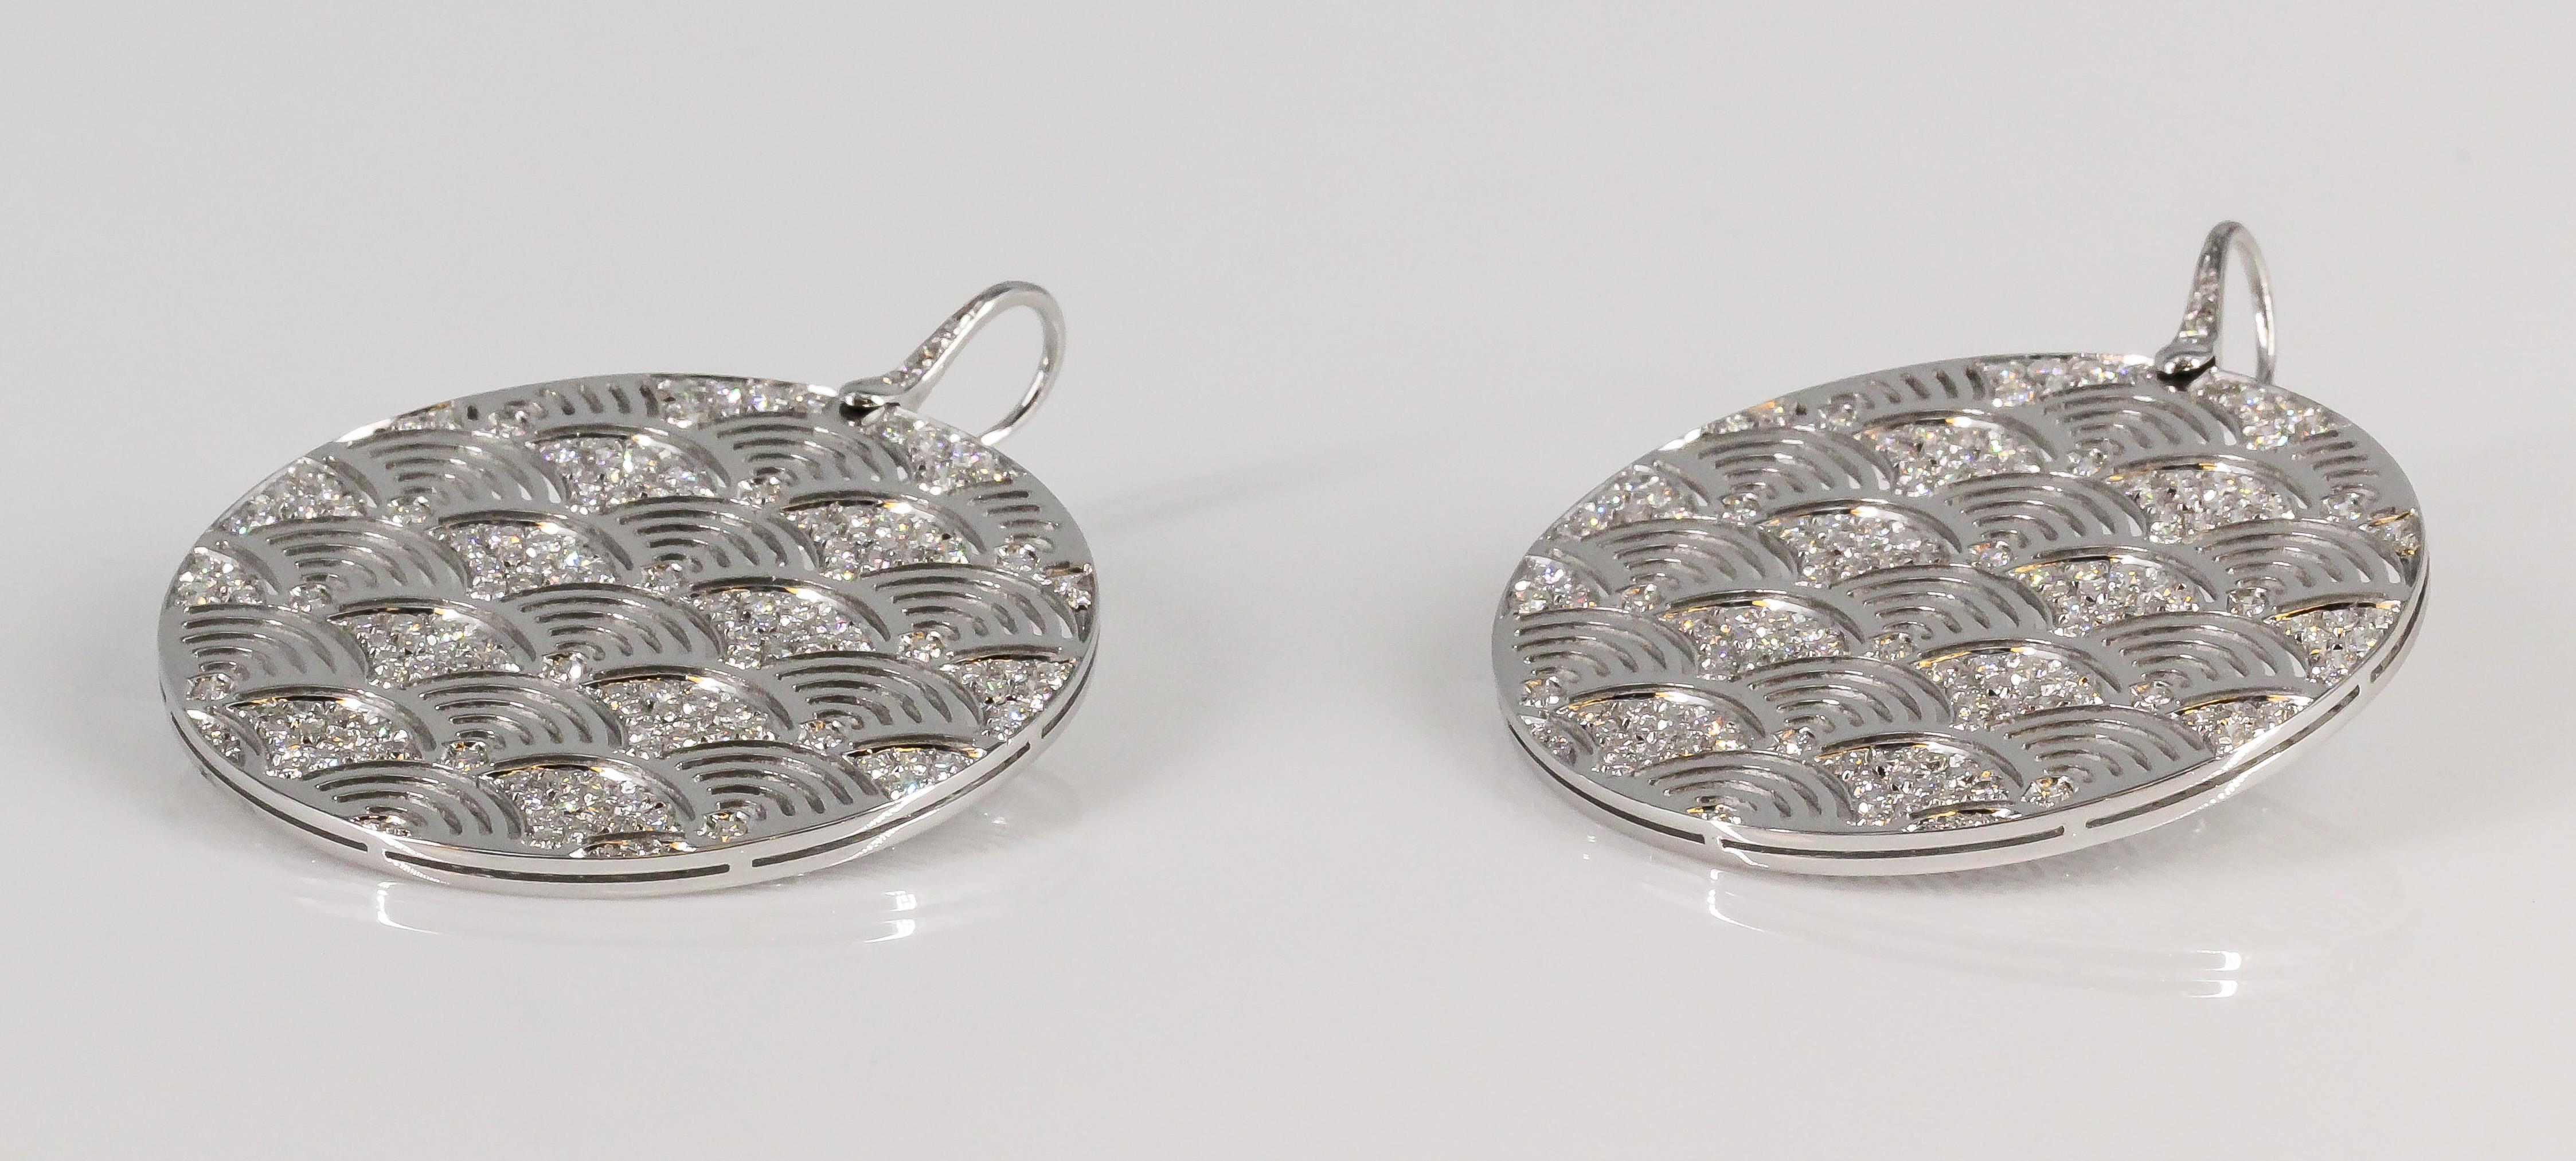 Feines Paar Tropfenohrringe aus Diamanten und 18 Karat Weißgold von Enigma, Gianni Bulgari. Diese Ohrringe in Form von hängenden runden Scheiben sind ein atemberaubendes Schmuckstück, das Eleganz und Raffinesse verkörpert. 

Die Ohrringe sind aus